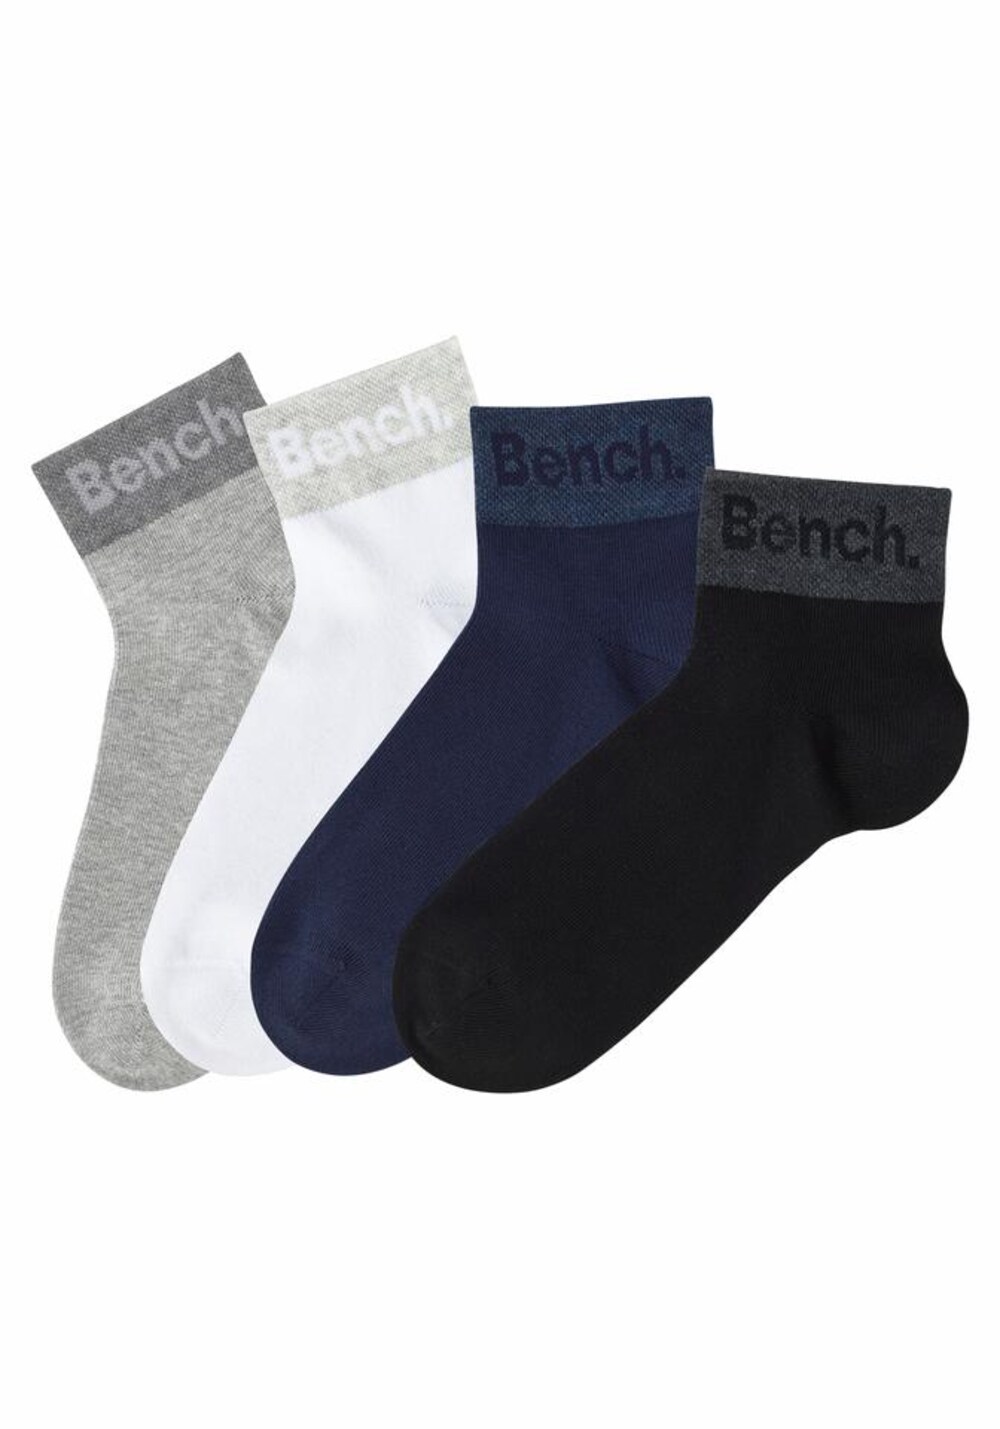 Носки Bench, смешанные цвета носки normani смешанные цвета